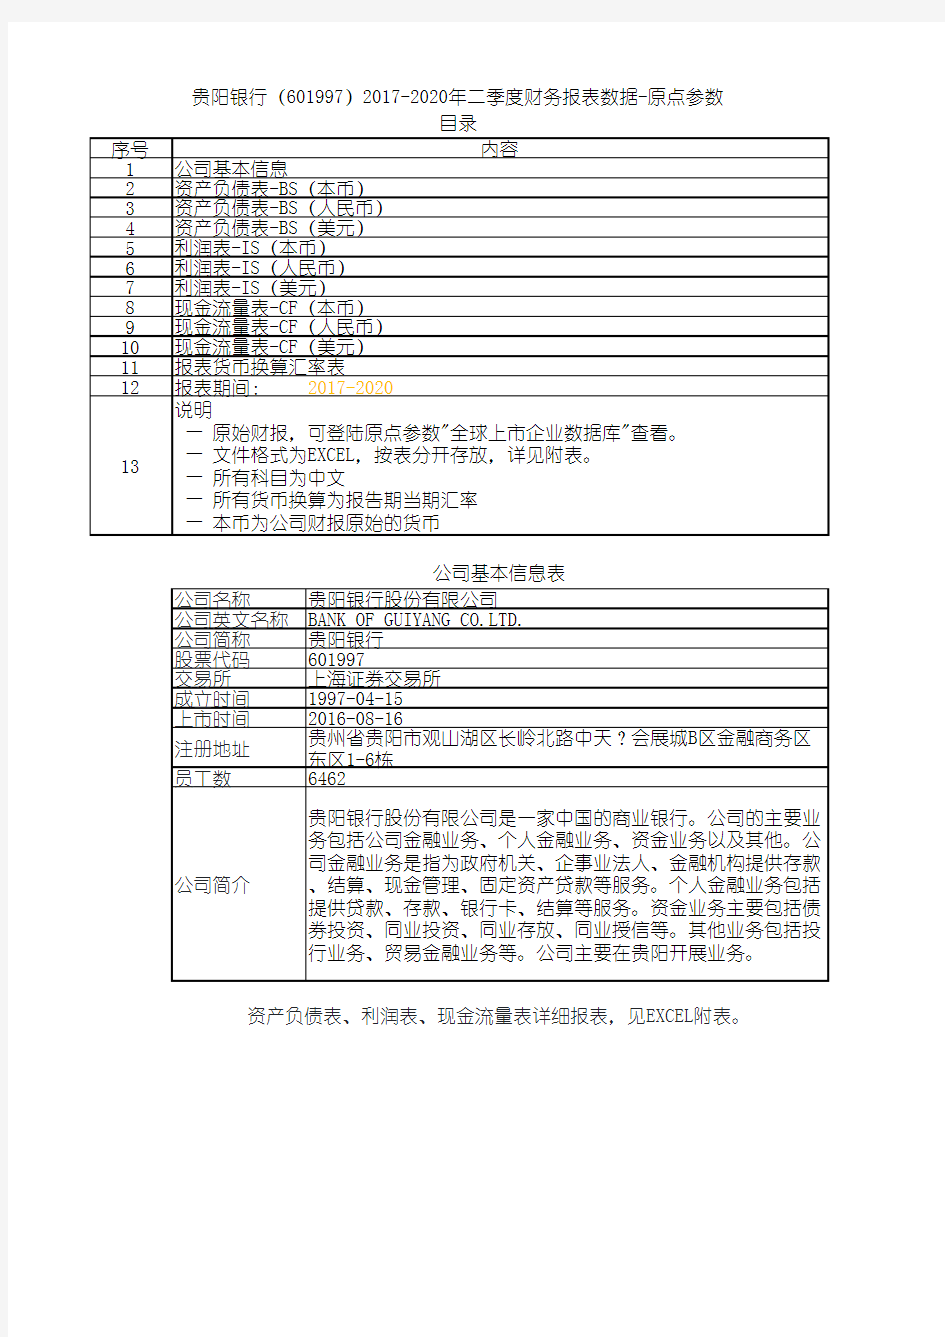 贵阳银行(601997)2017-2020年二季度财务报表数据-原点参数